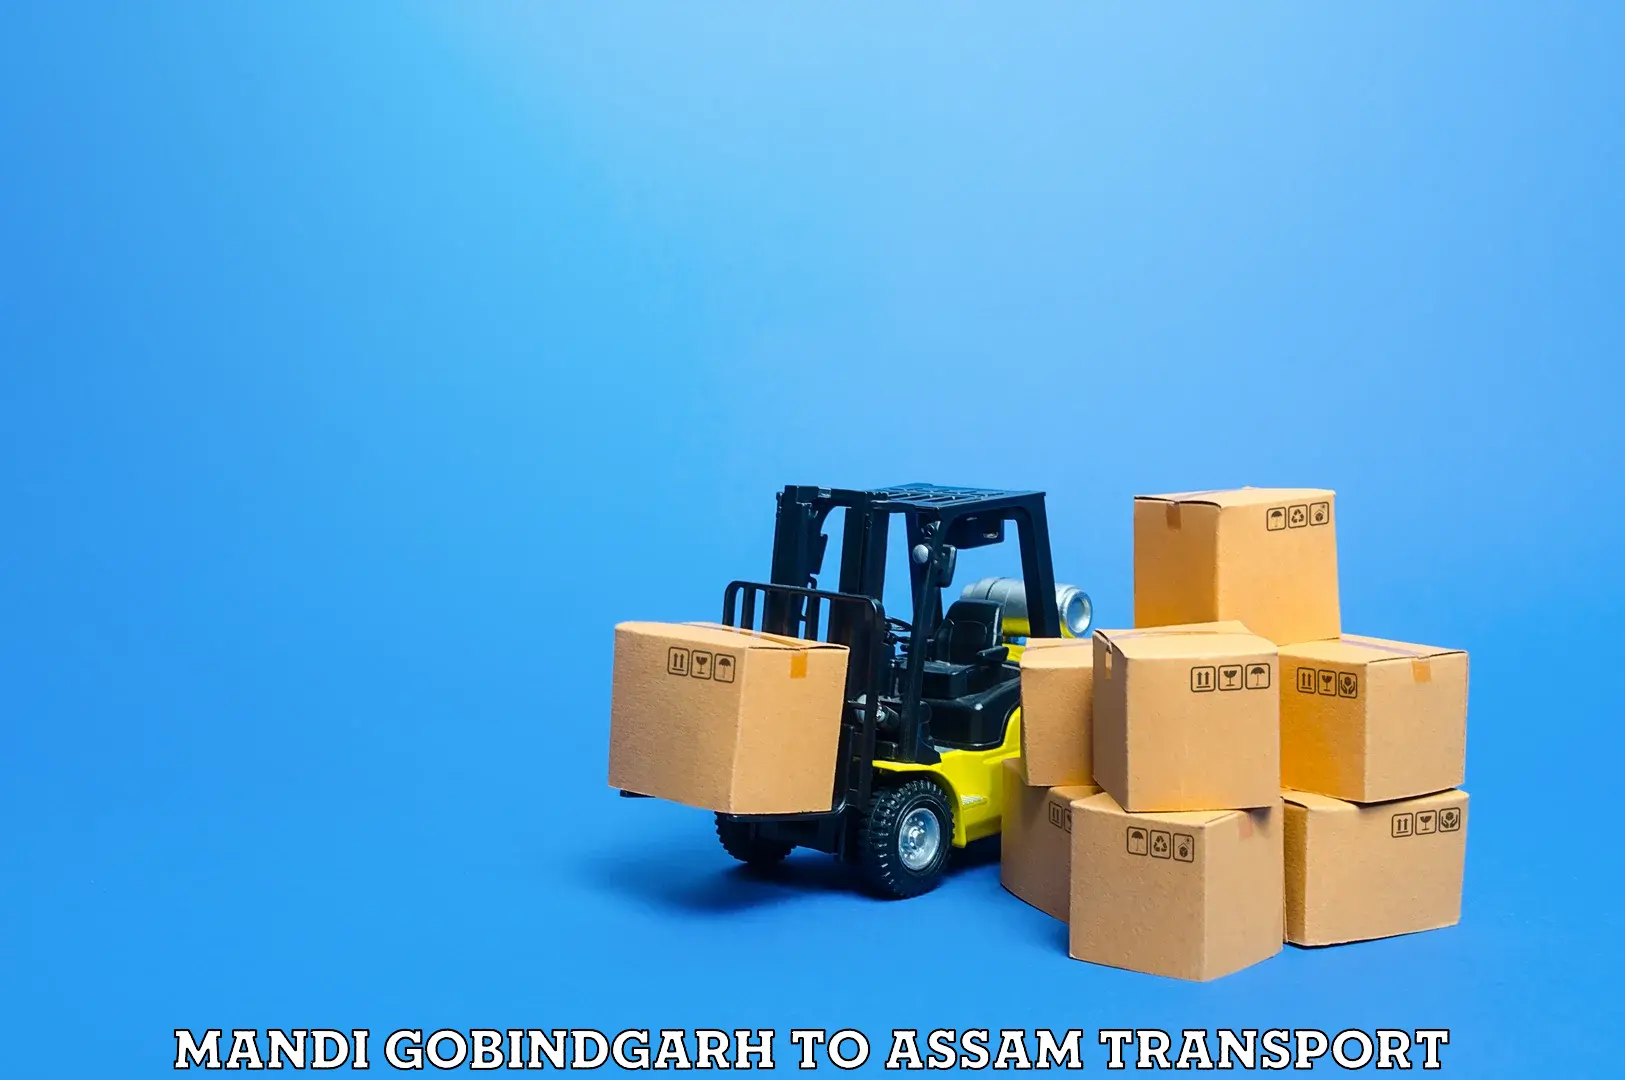 Furniture transport service Mandi Gobindgarh to Dhekiajuli